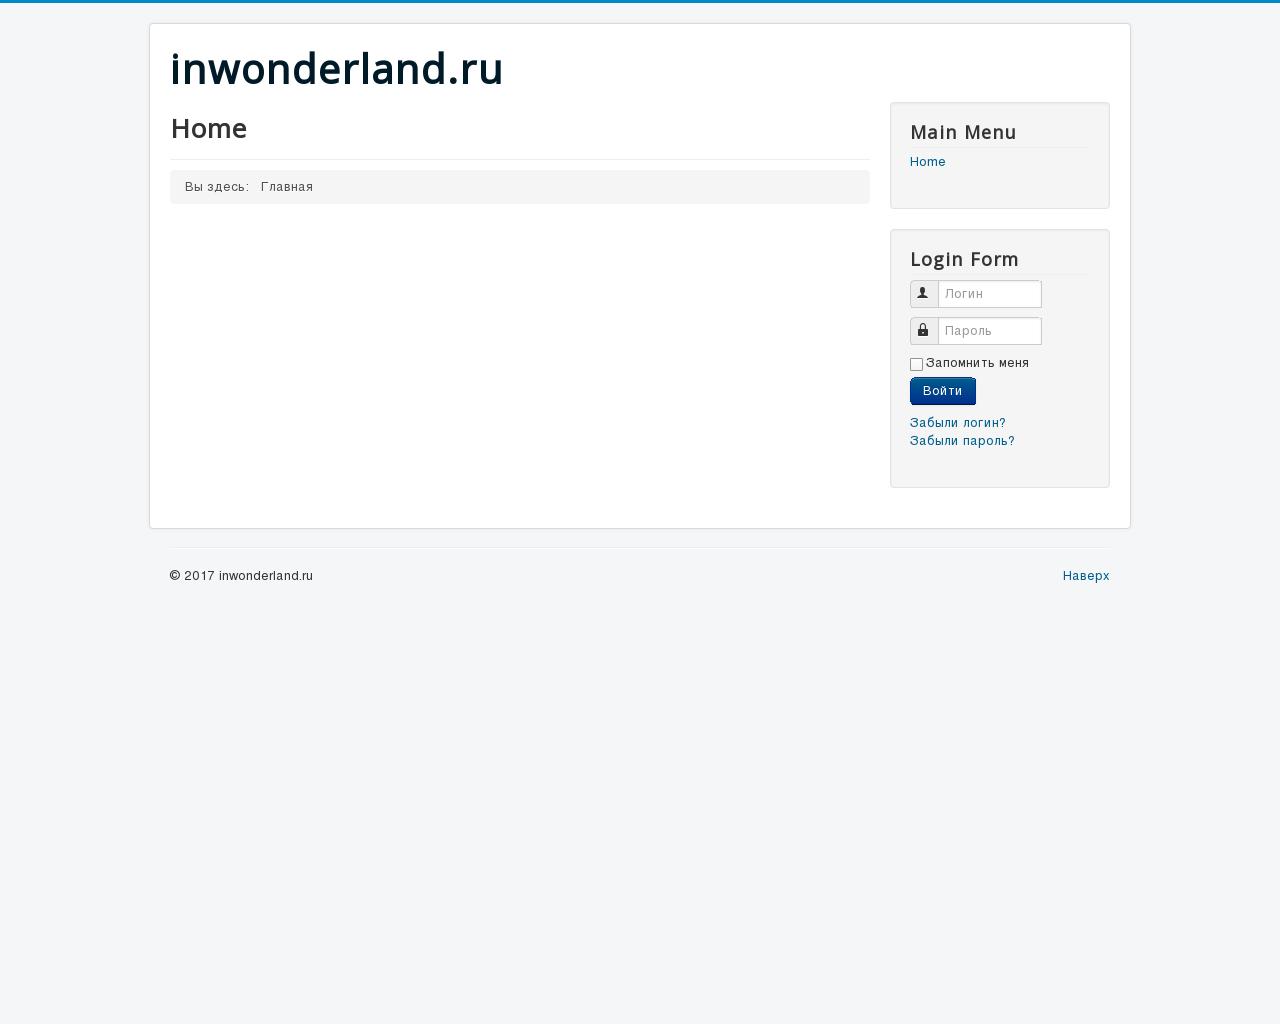 Изображение сайта inwonderland.ru в разрешении 1280x1024